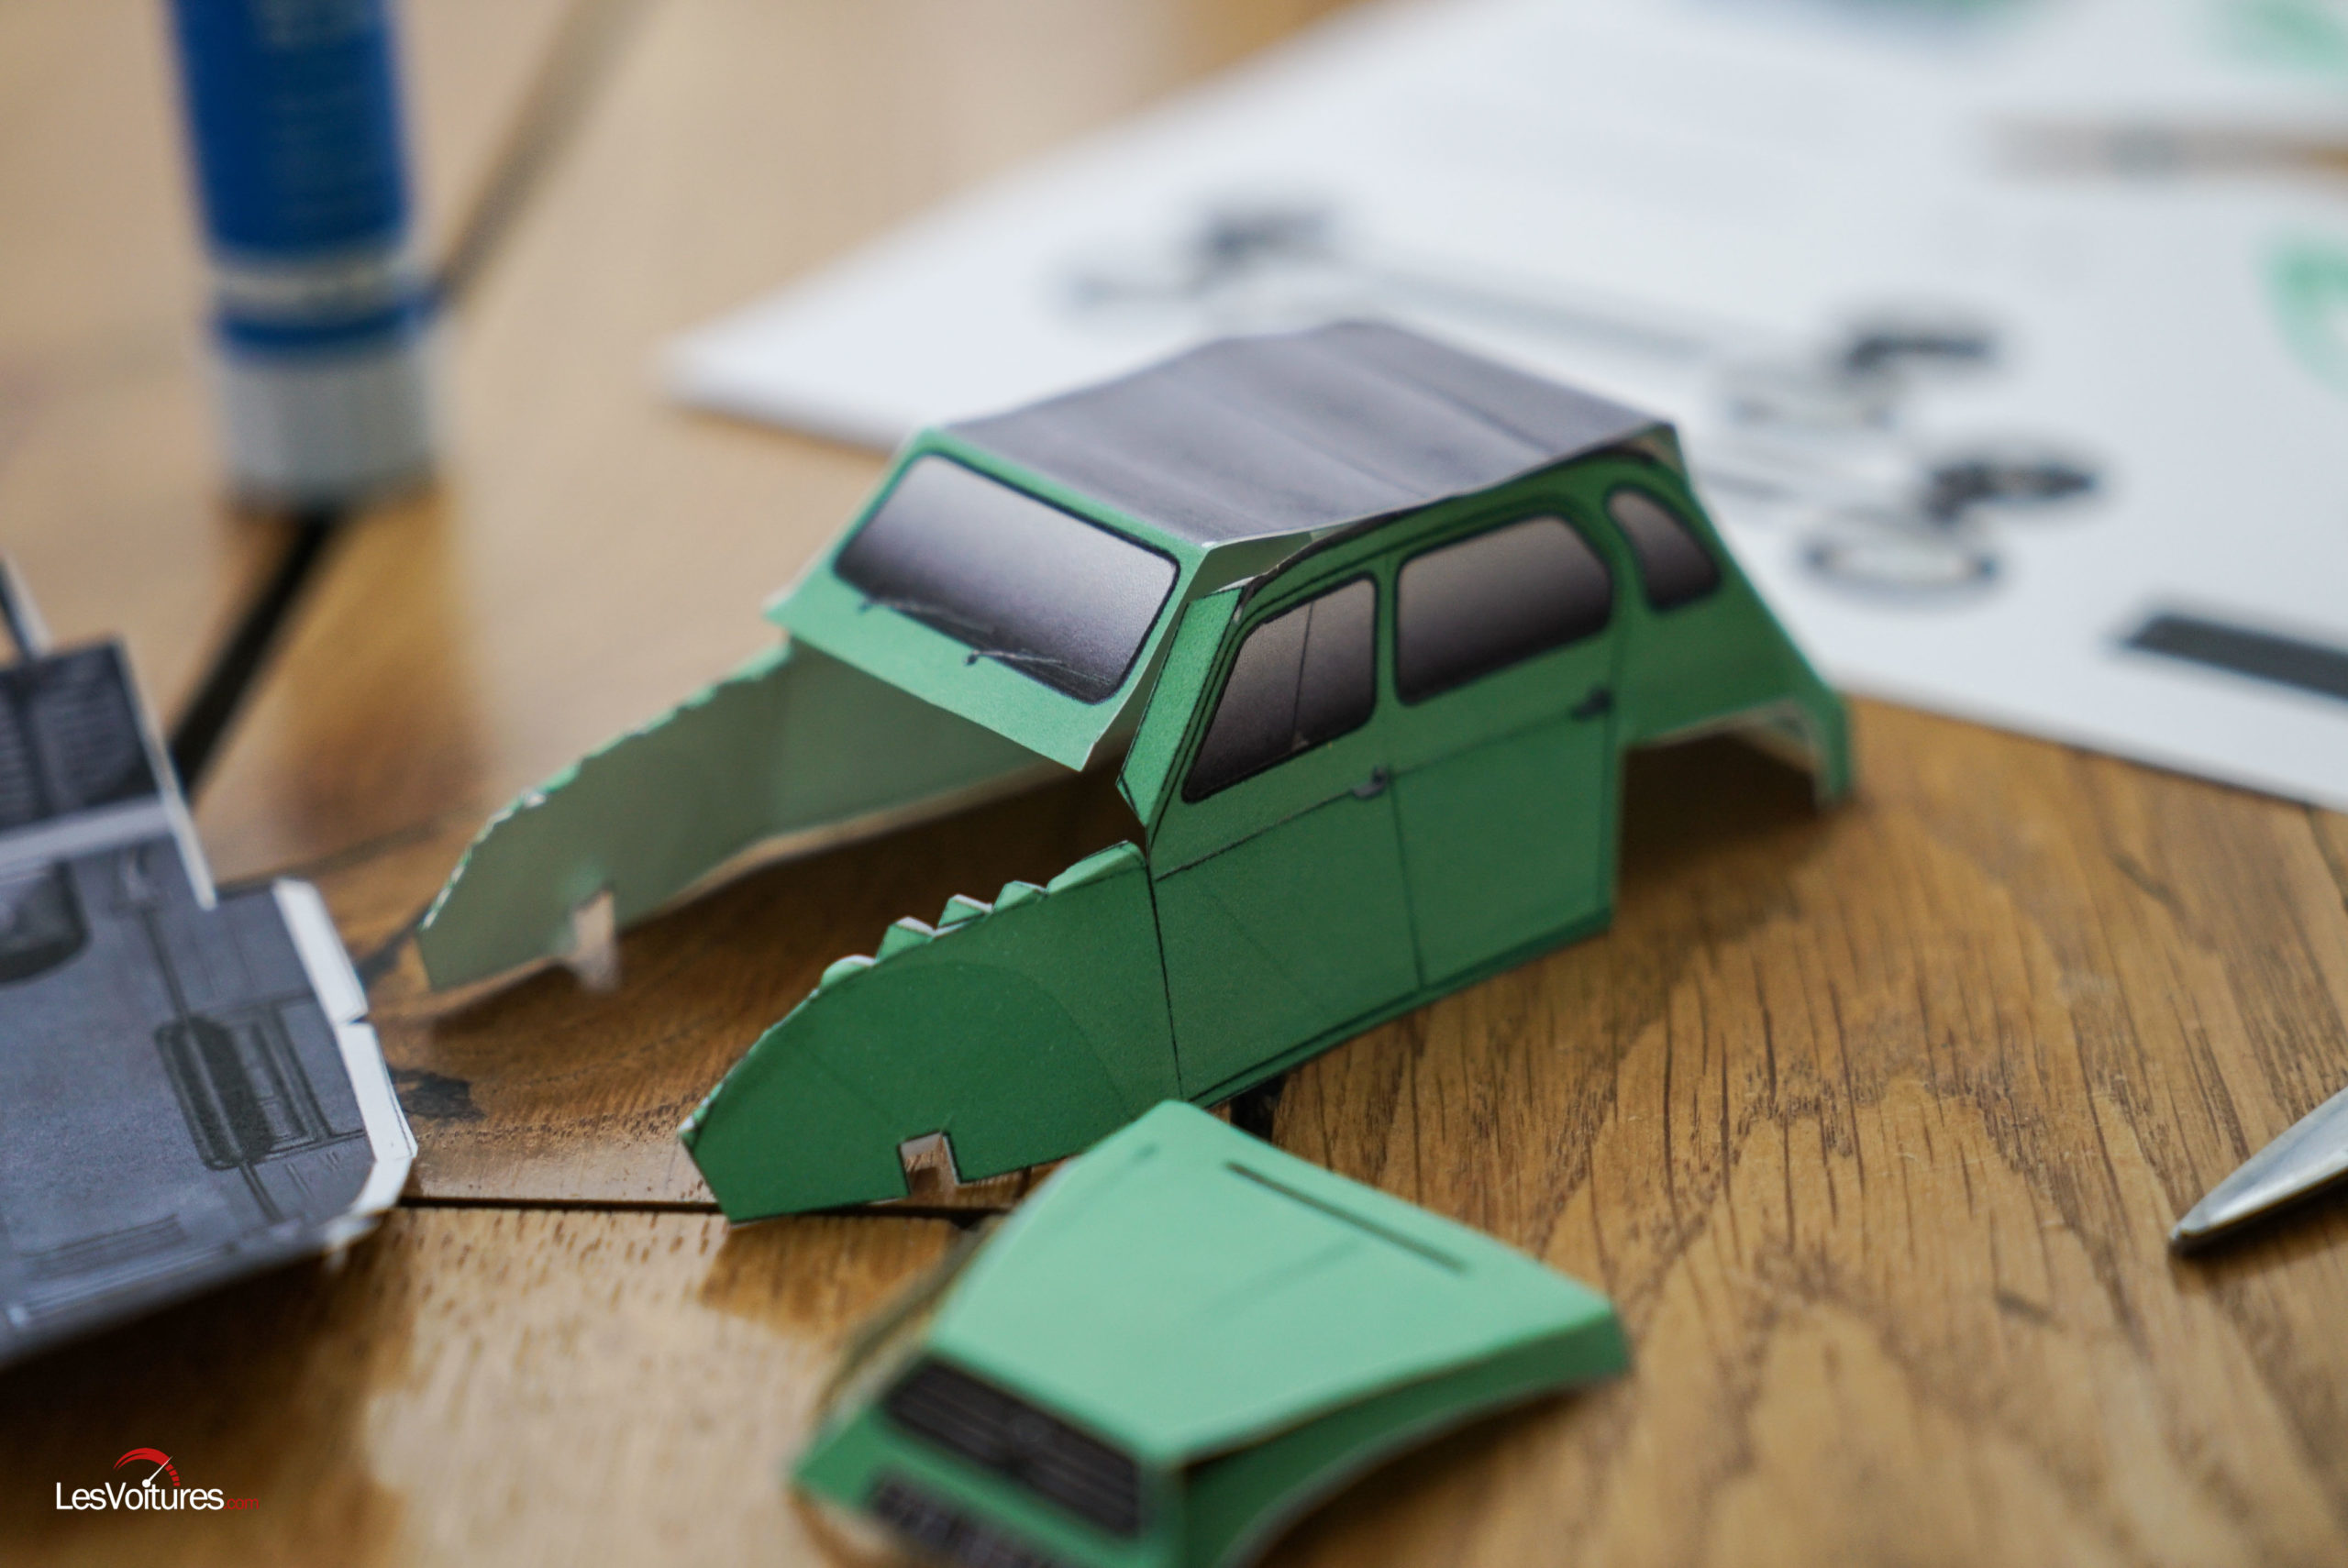 https://lesvoitures.fr/wp-content/uploads/2020/03/voiture-maquette-a-decouper-papier-telecharger-5-scaled.jpg